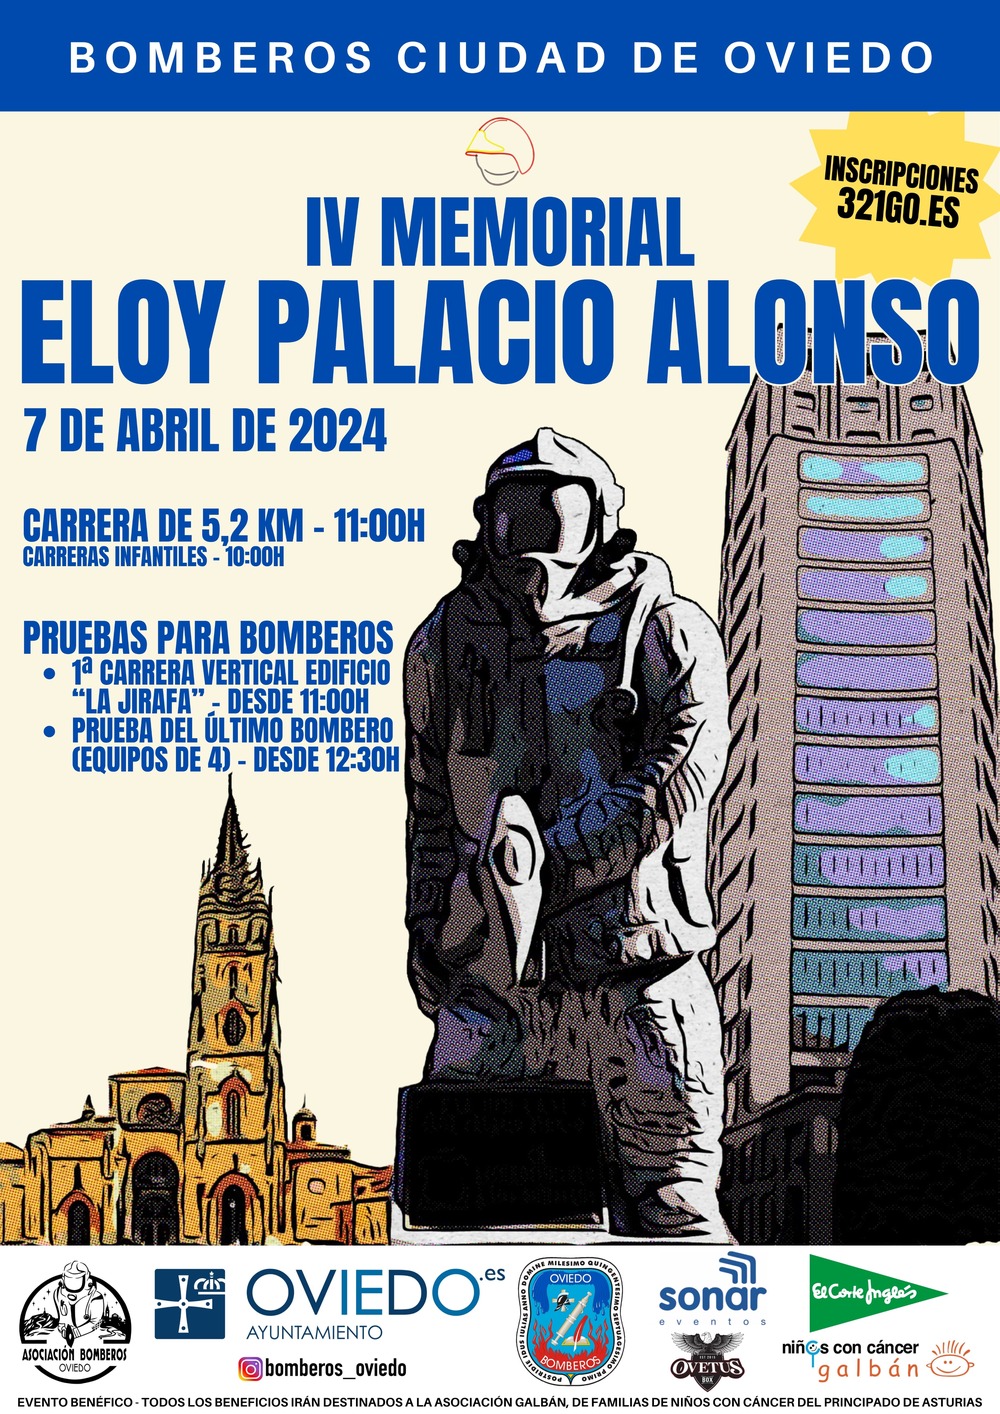 IV MEMORIAL ELOY PALACIO ALONSO-BOMBEROS CIUDAD DE OVIEDO